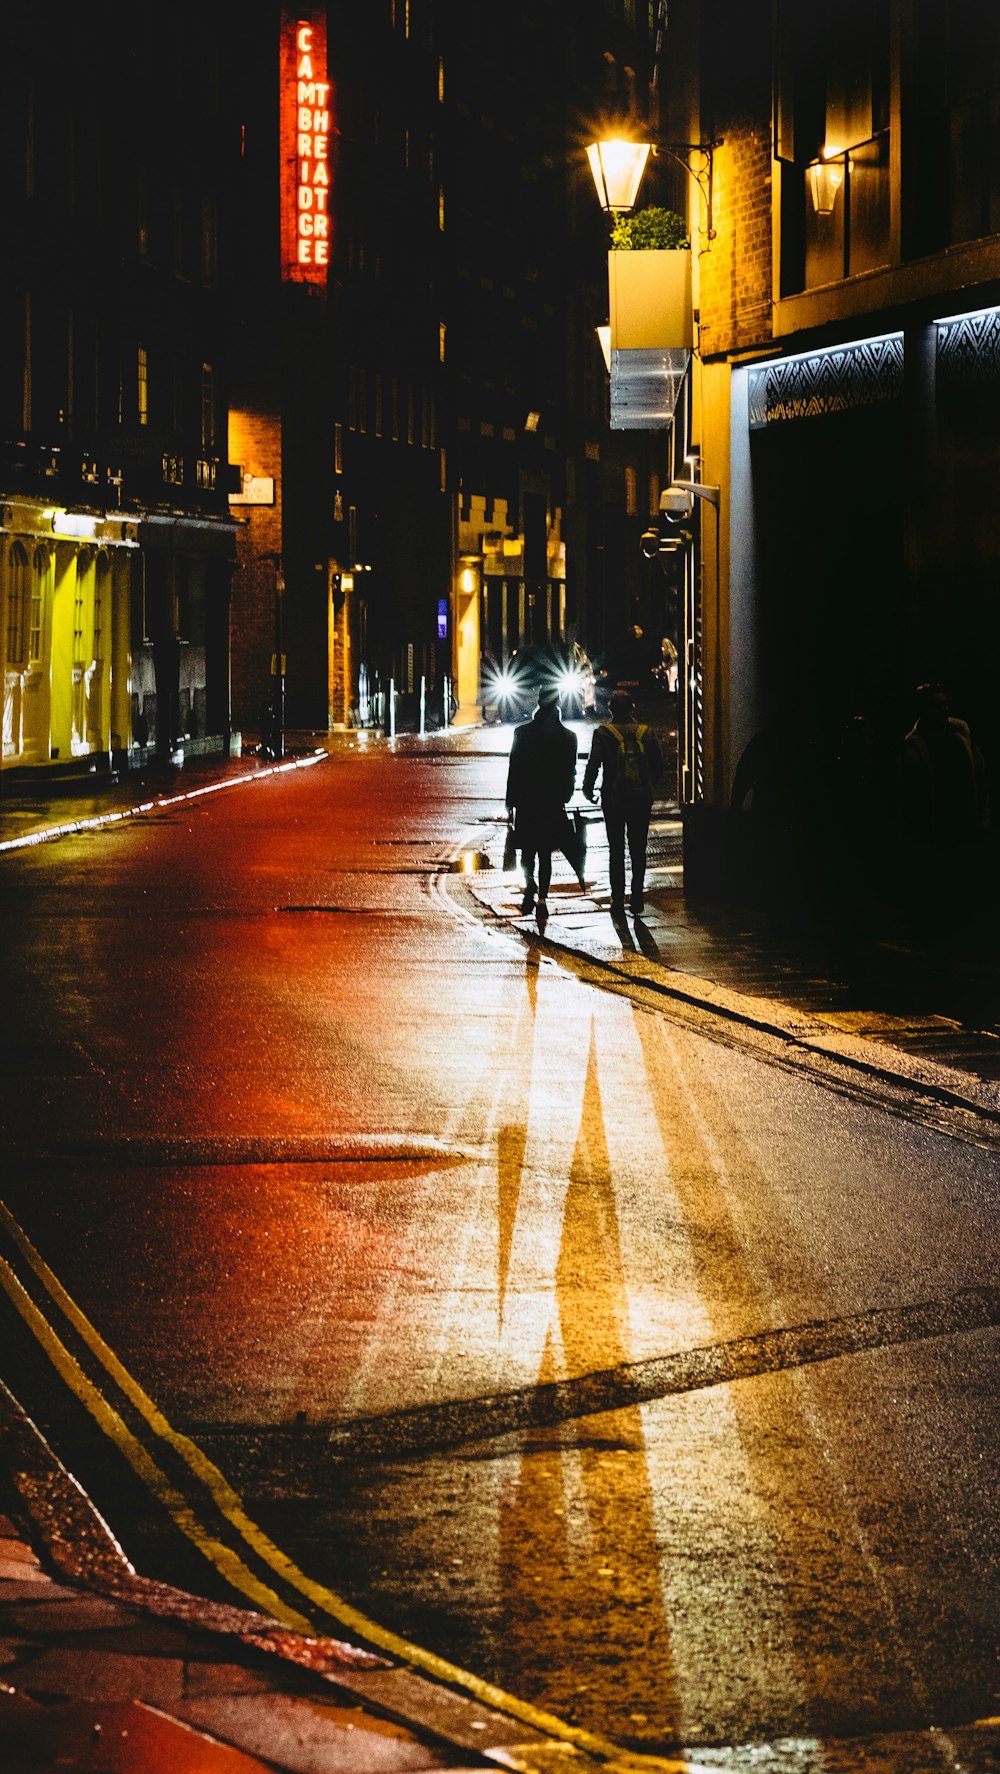 deux personnes marchant dans la rue à côté d’un immeuble pendant la nuit